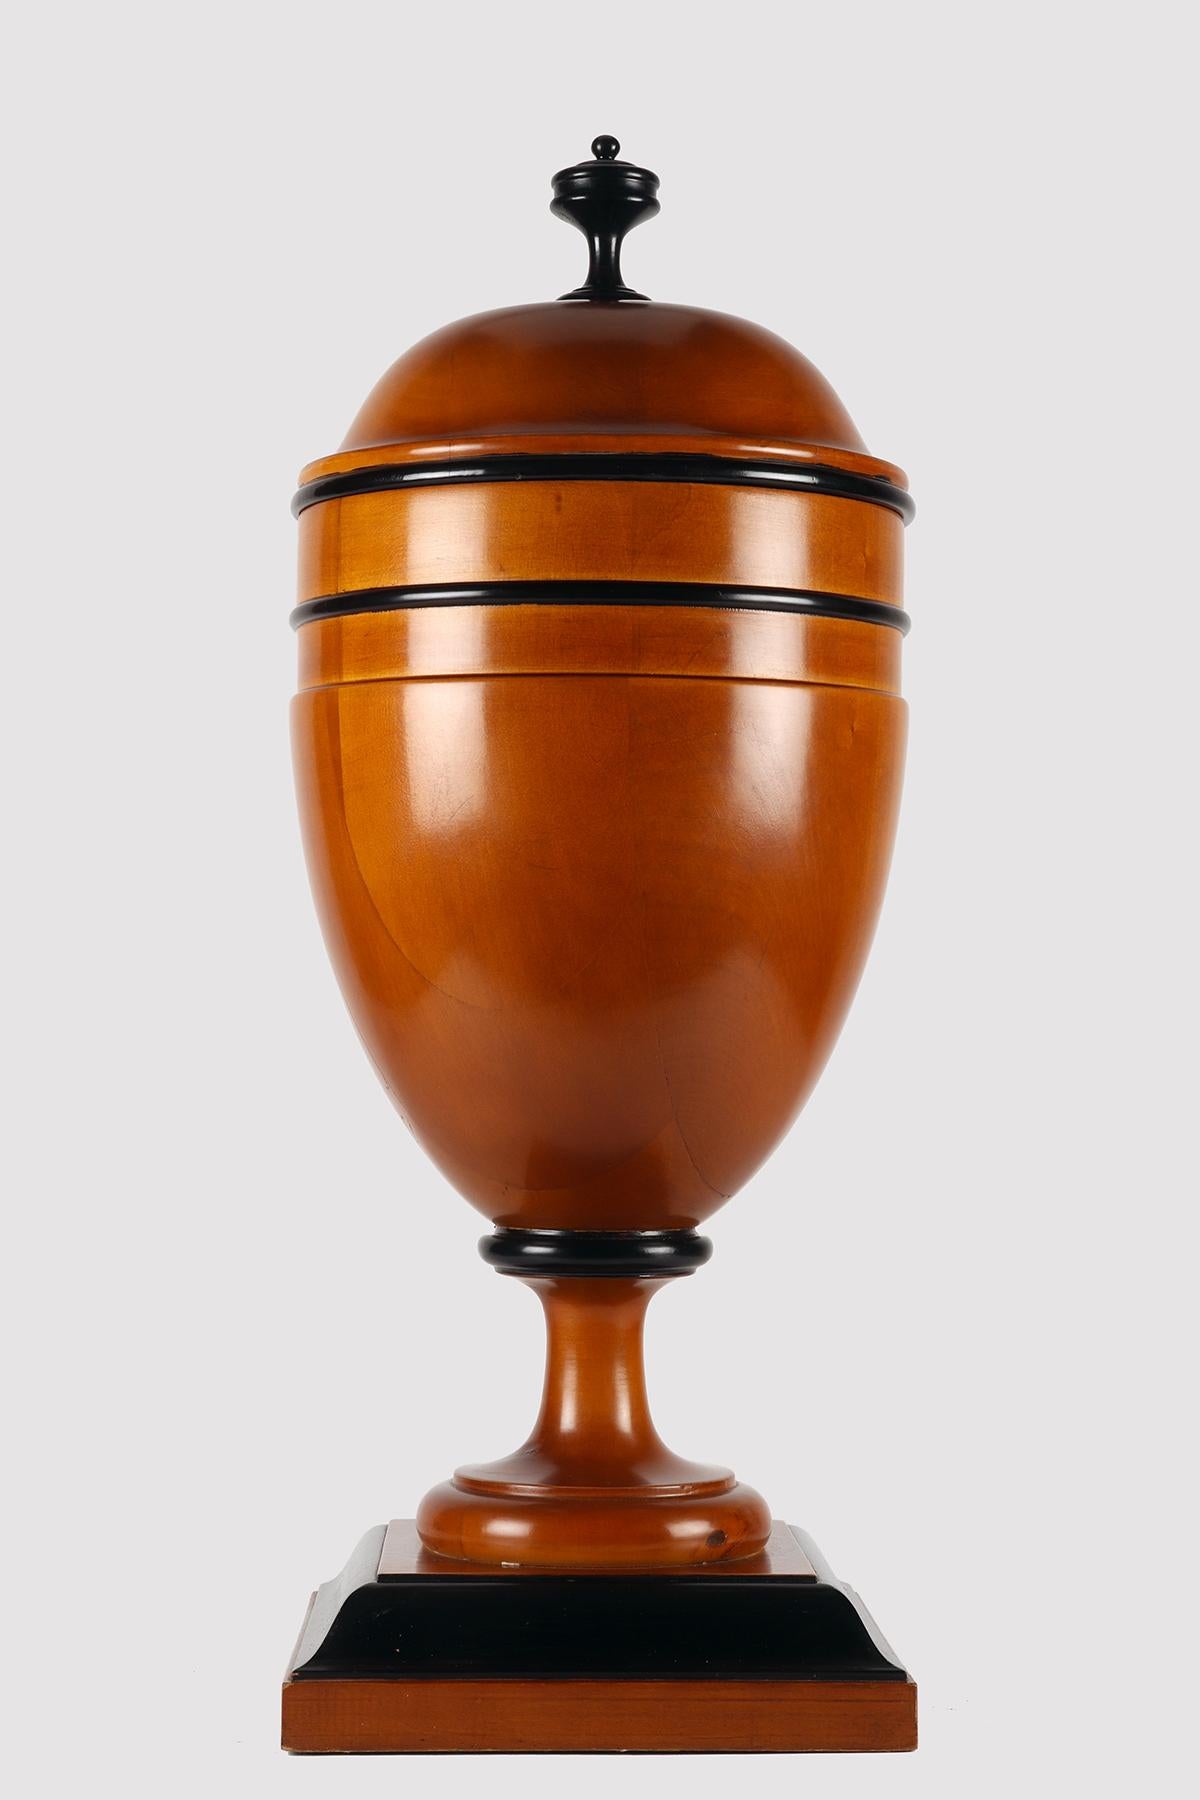 Grand pot d'apothicaire-herboriste avec couvercle dans le plus pur style Biedermeier. Fabriqué en bois d'érable, la surface est traitée à la gomme-laque et à la cire d'abeille, les bords et le bouton sont laqués en noir. Venant de